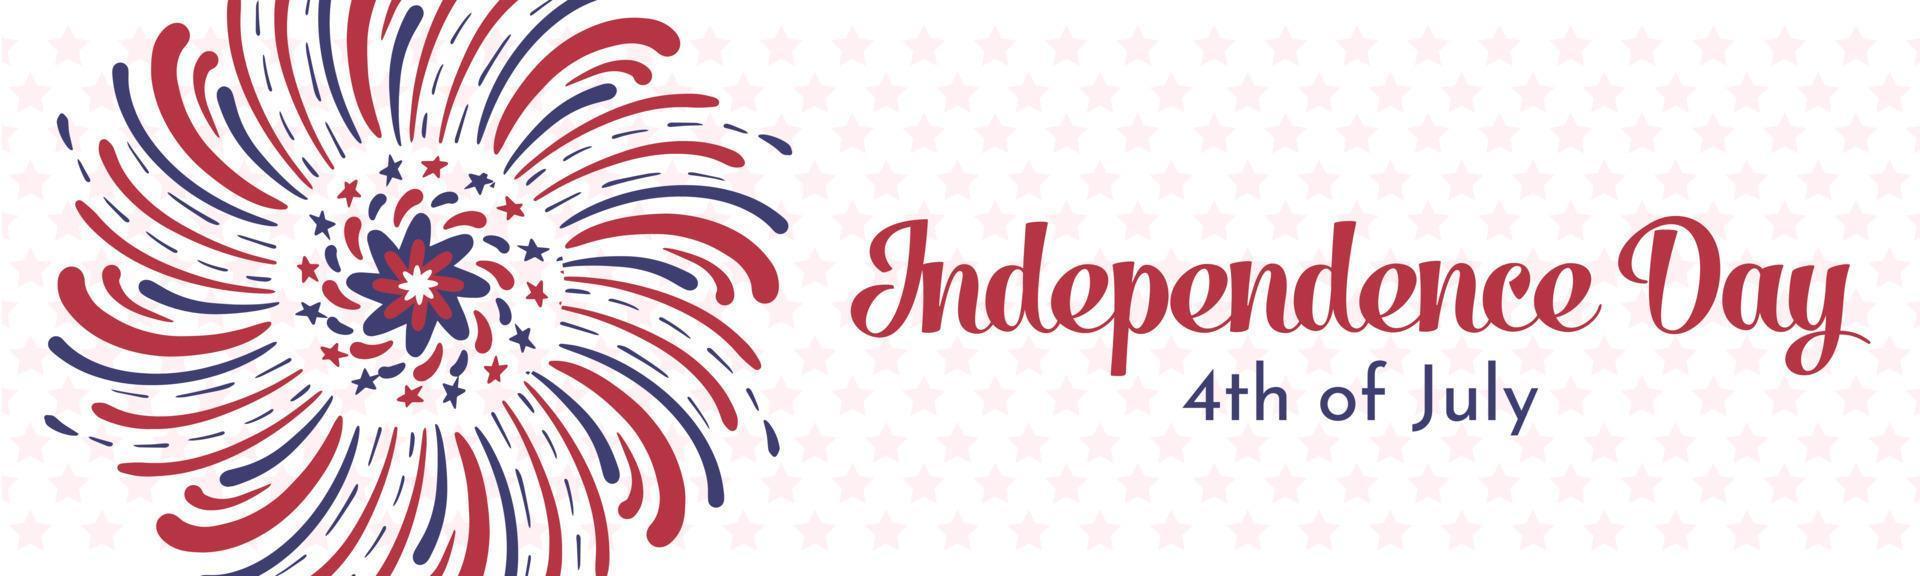 pancarta para el 4 de julio, día de la independencia. fuegos artificiales artísticos dibujados a mano con líneas y estrellas rojas y azules de la bandera americana. diseño de plantilla de banner de vector horizontal largo.